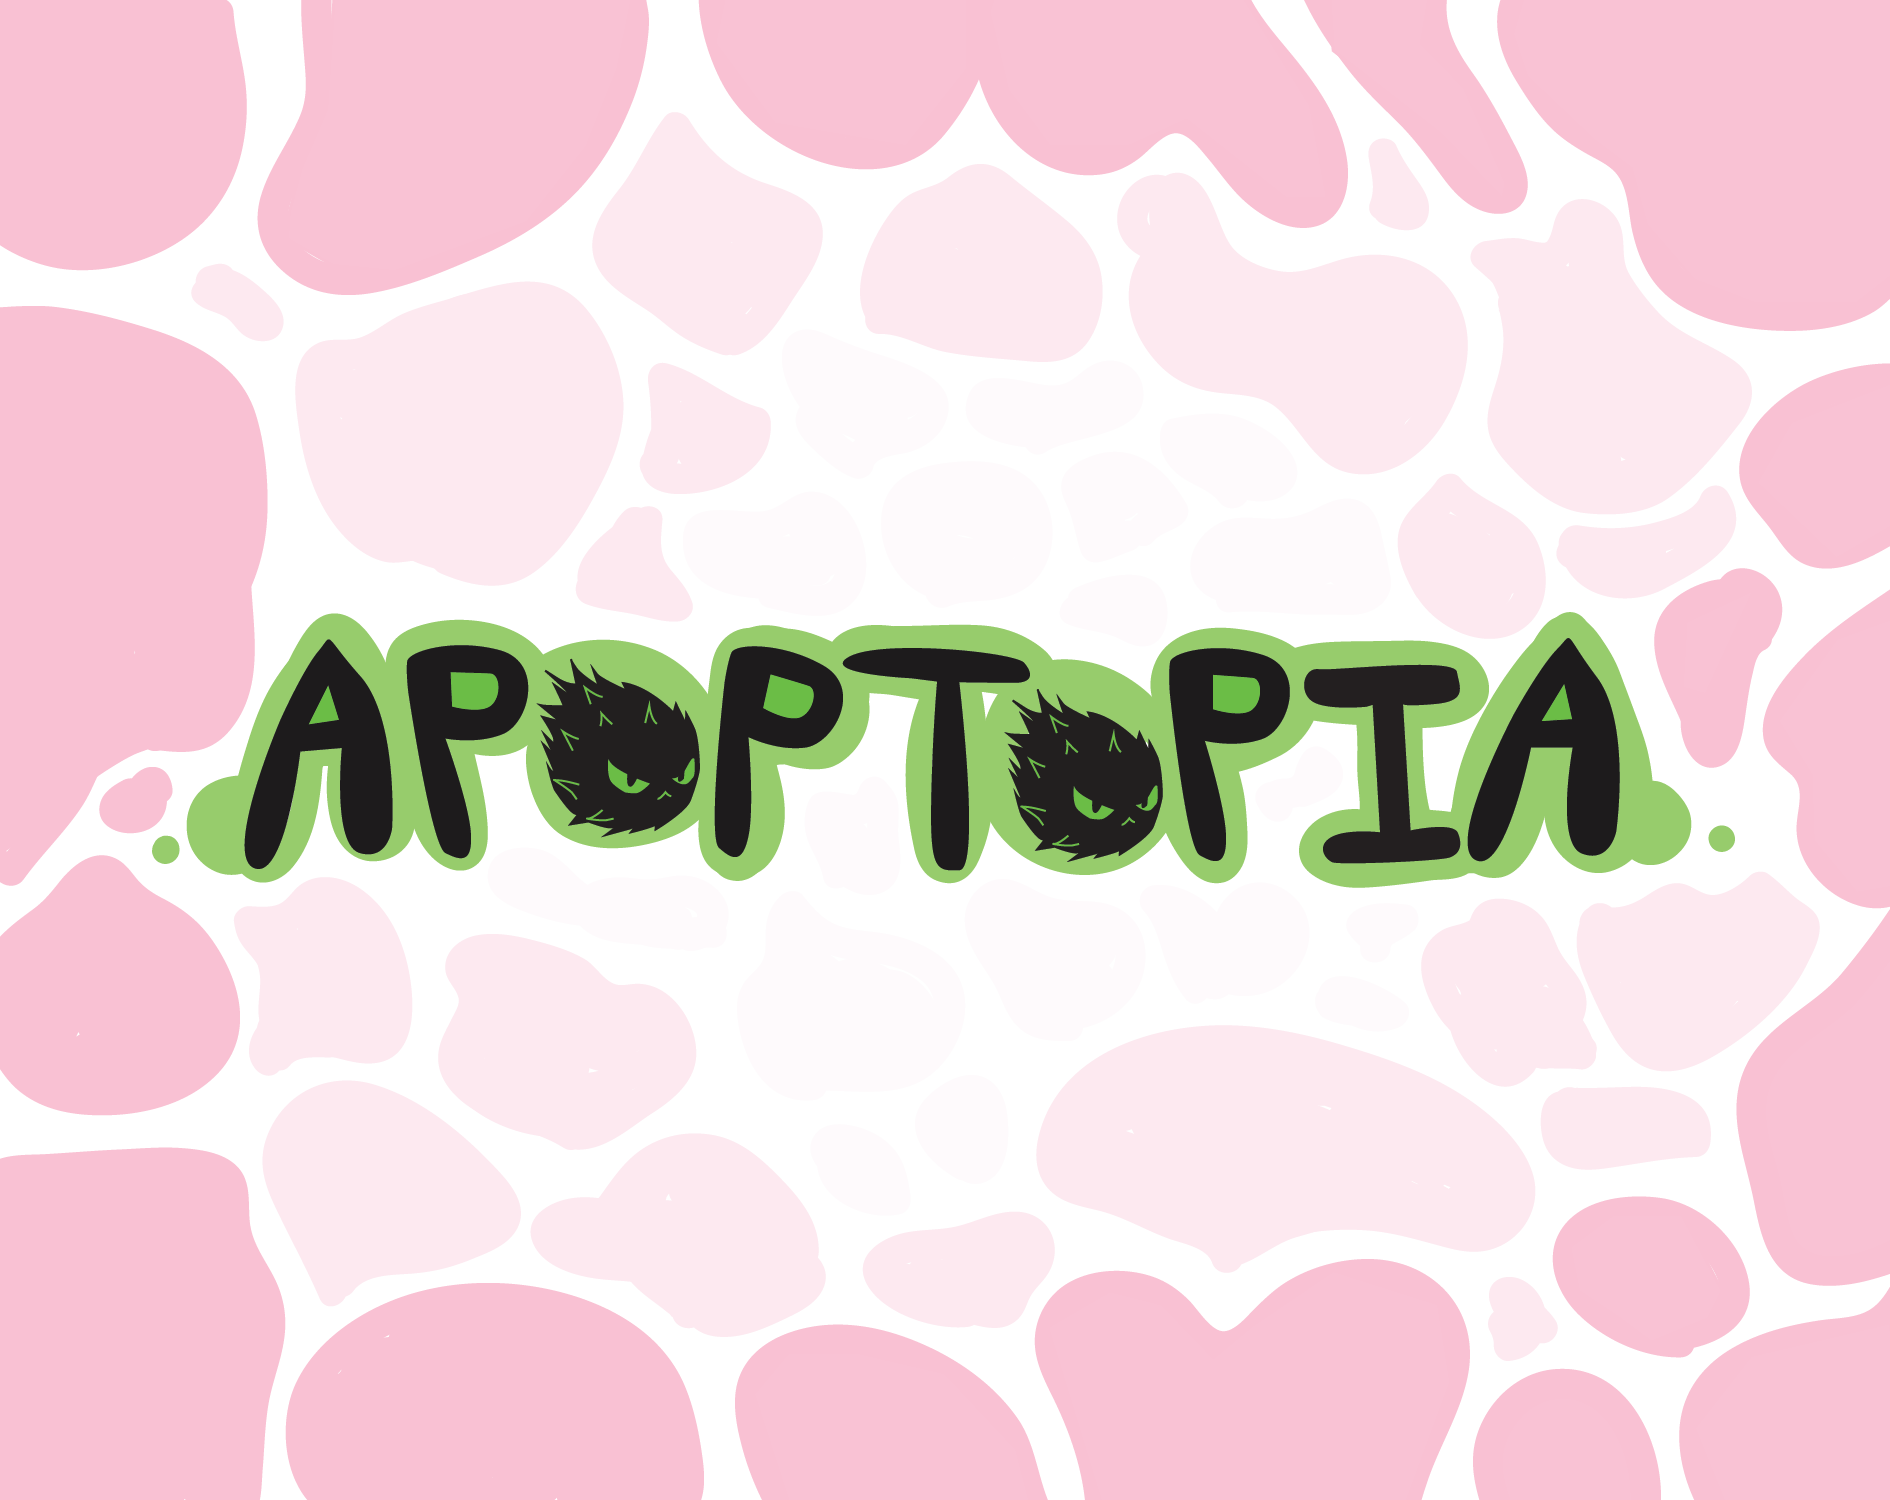 Apoptopia